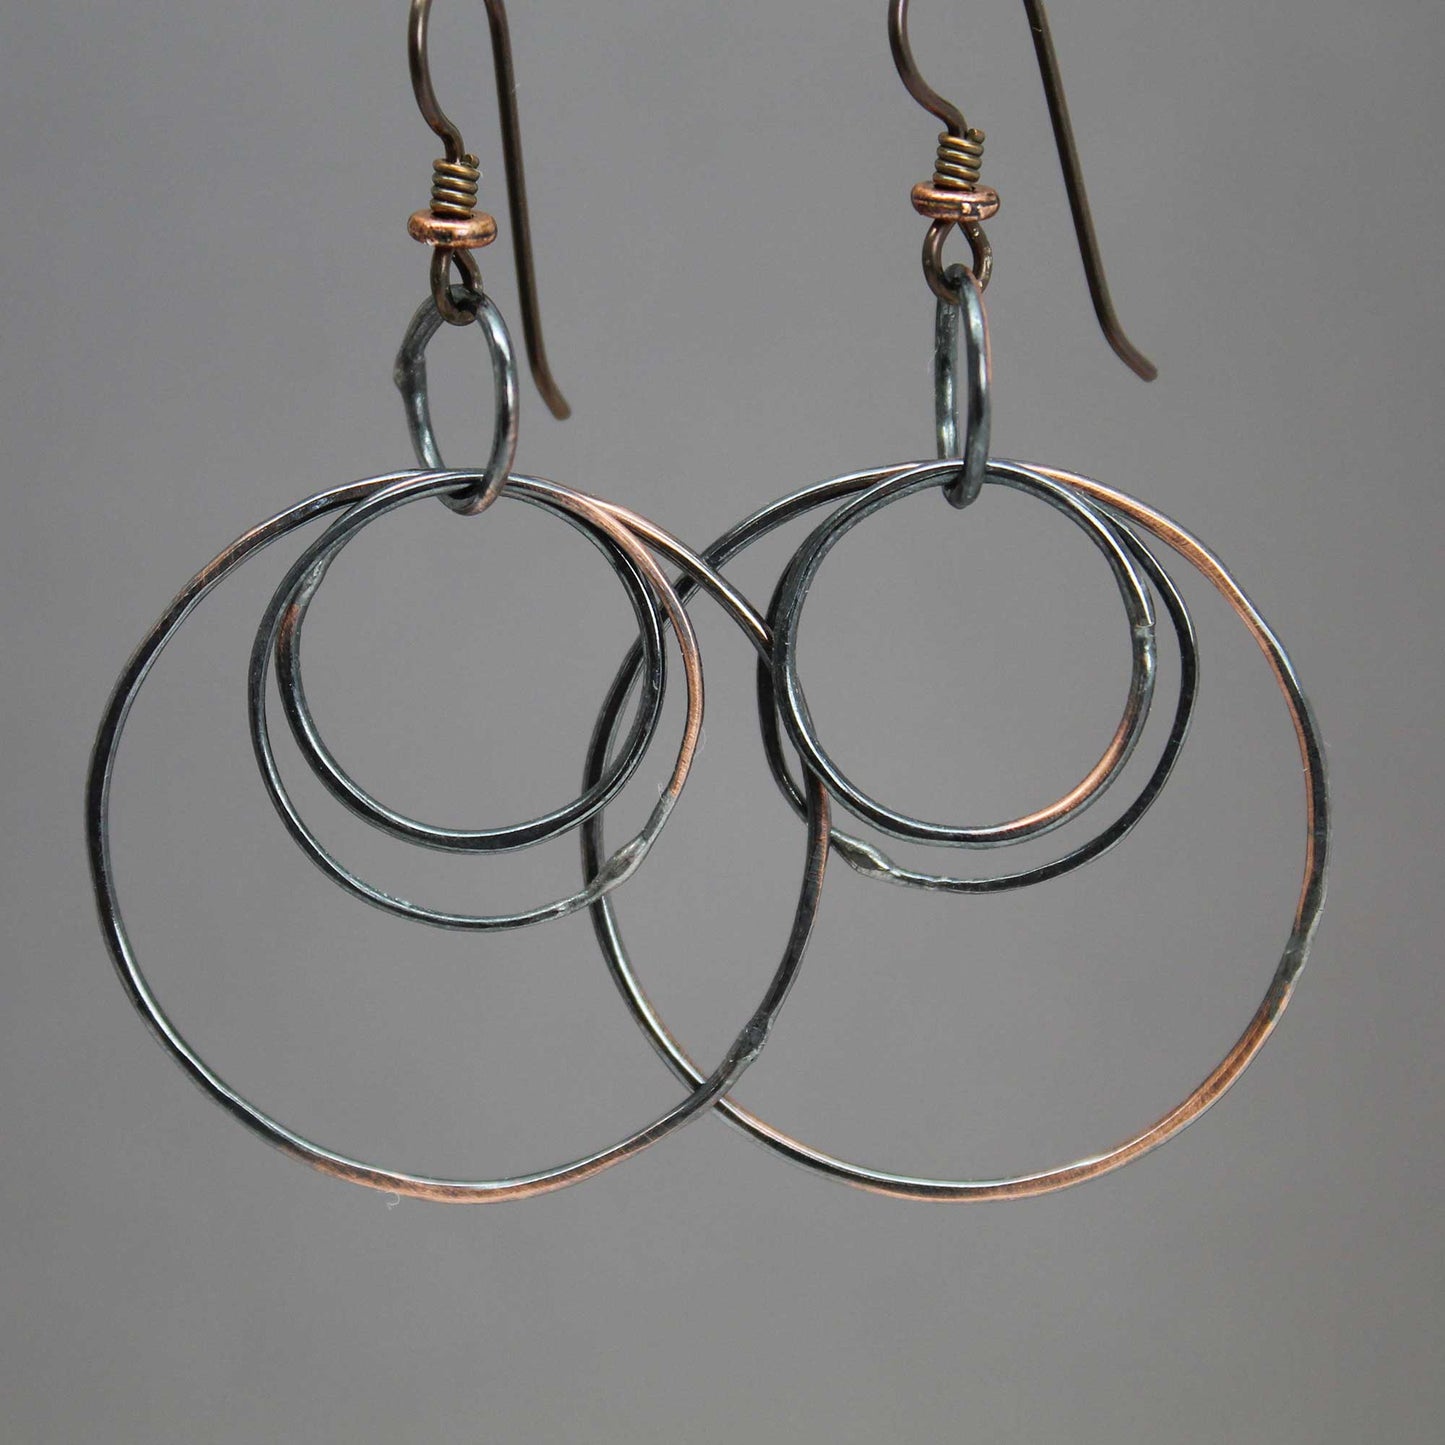 Handmade Rustic Copper Hoop Earrings